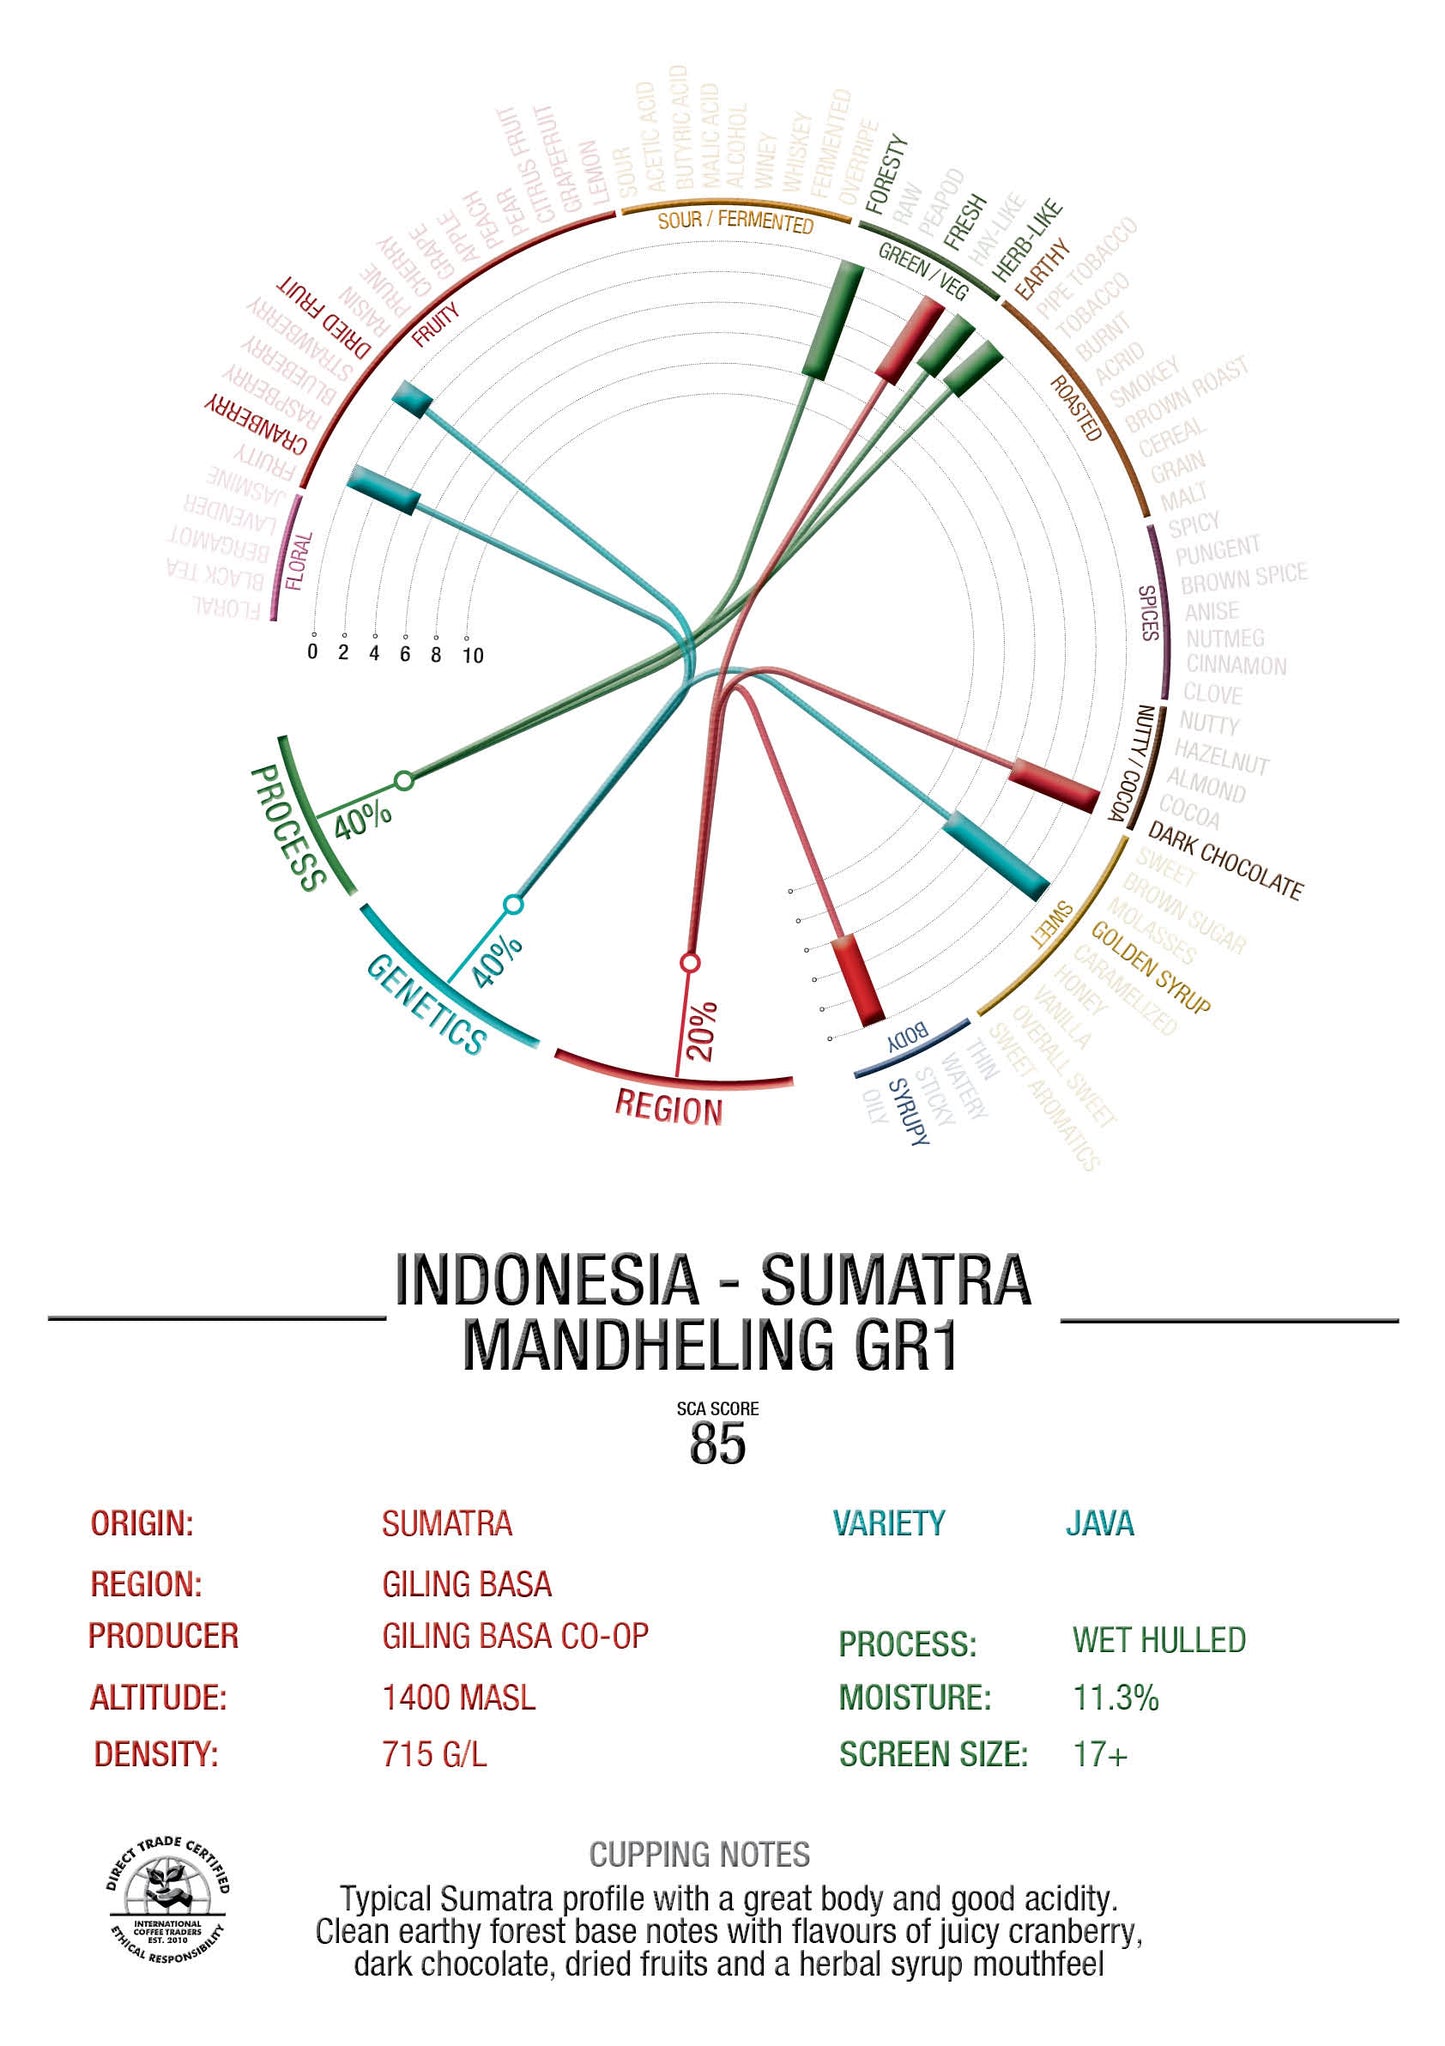 Indonesia - Sumatra Mandheling - "Grade 1" Wet Hulled